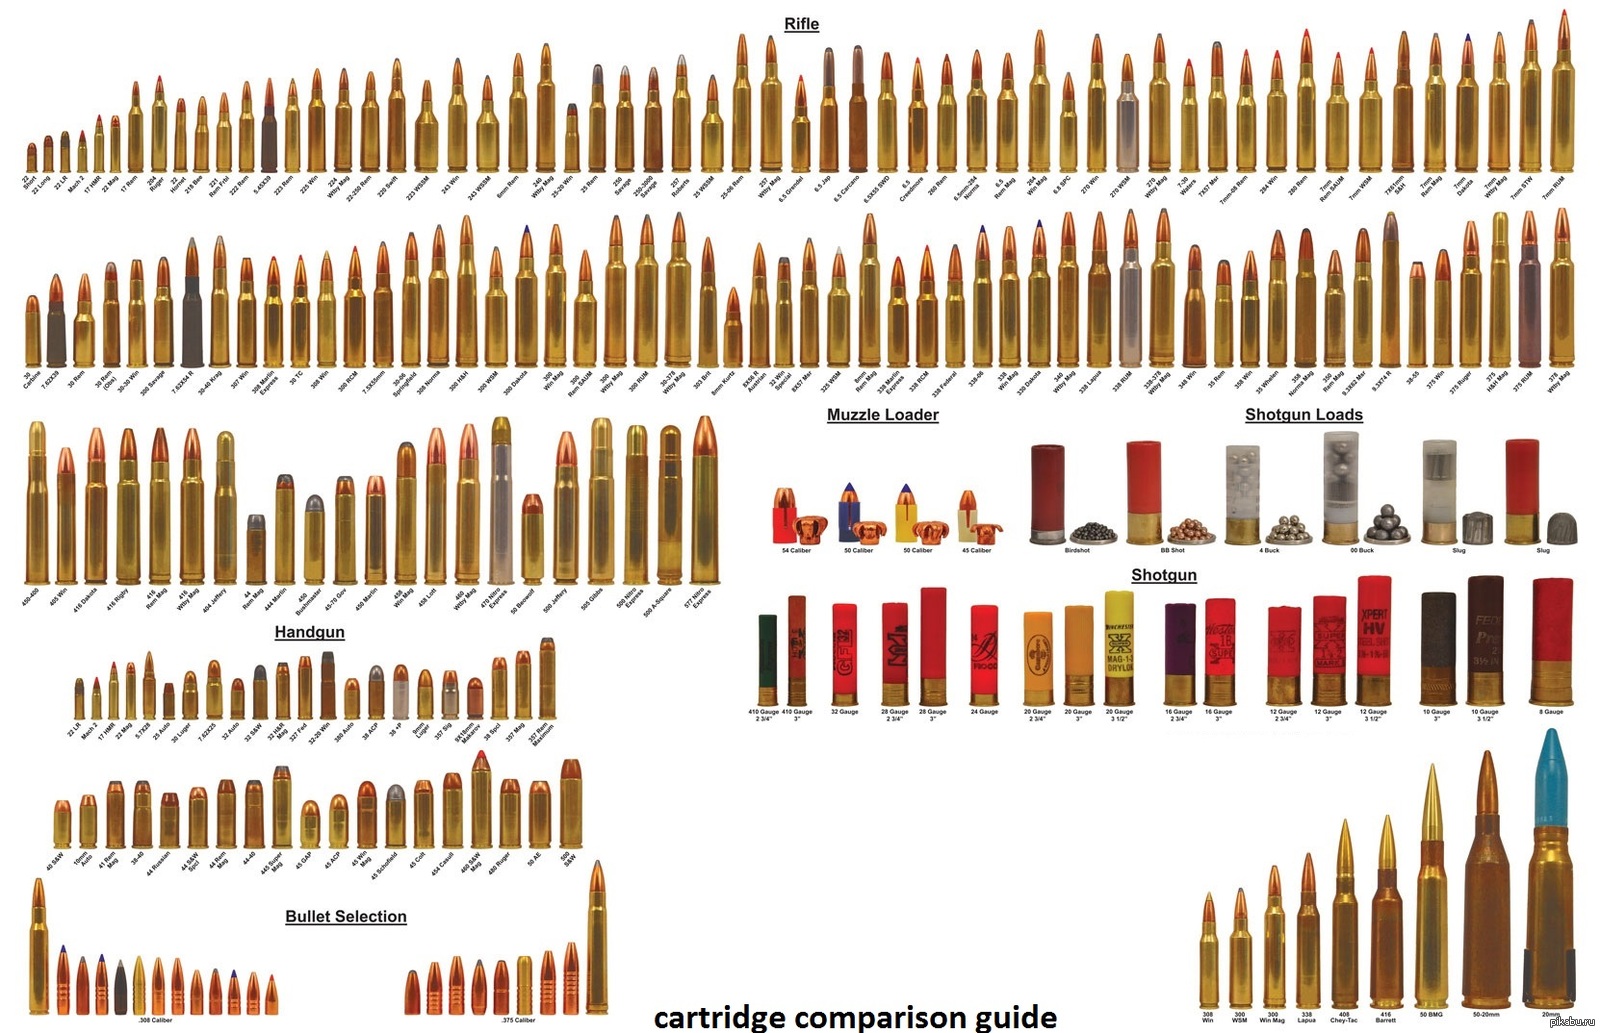 cartridge comparison guide.